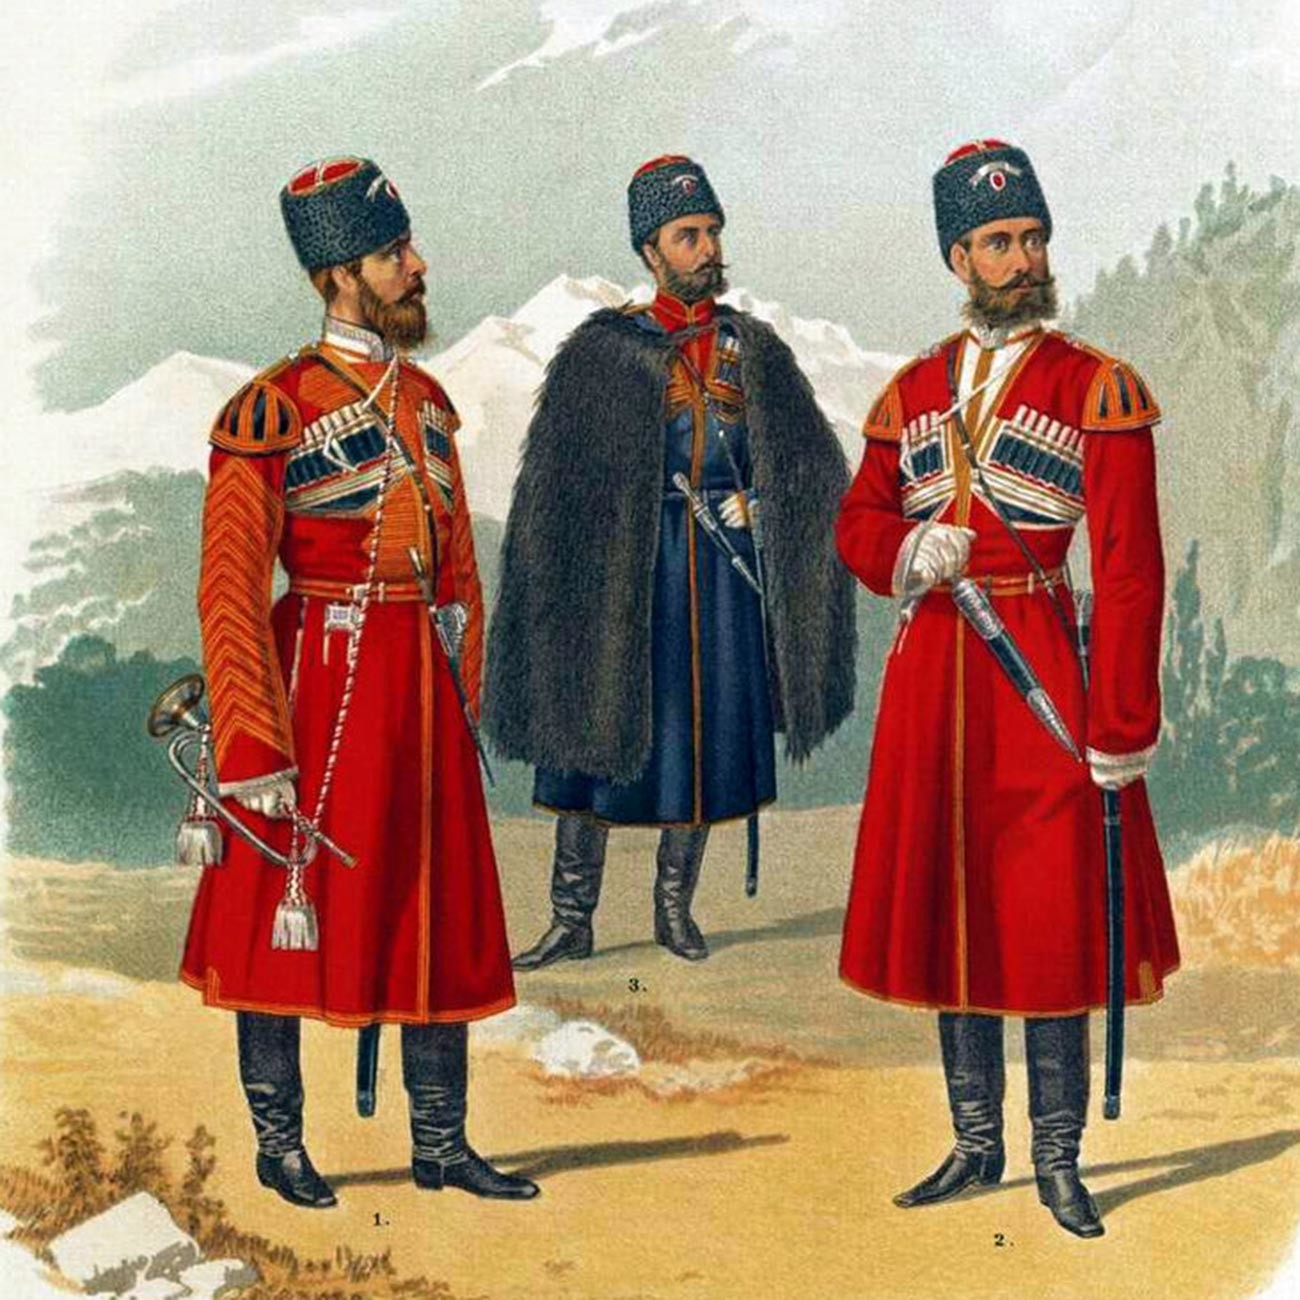 皇帝を守るために編成されたコサック連隊の衣装